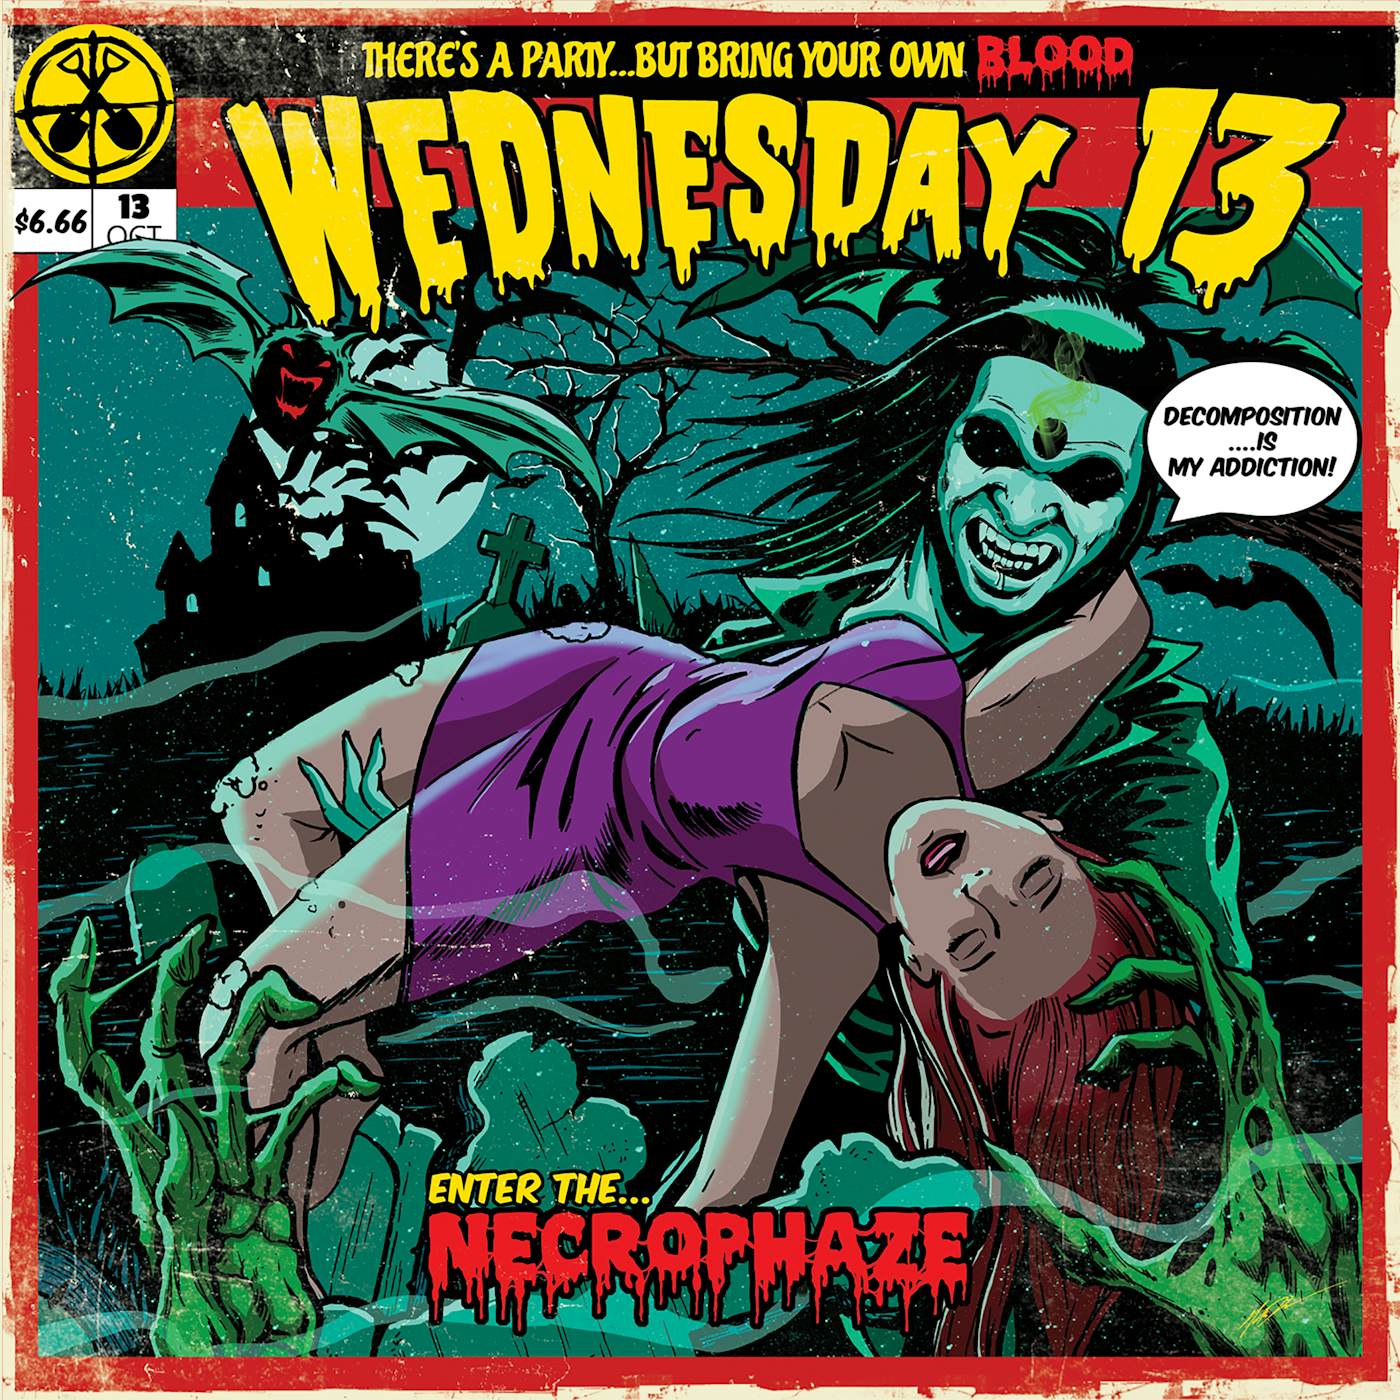 Wednesday 13 NECROPHAZE (MINT/PURPLE SWIRL) Vinyl Record